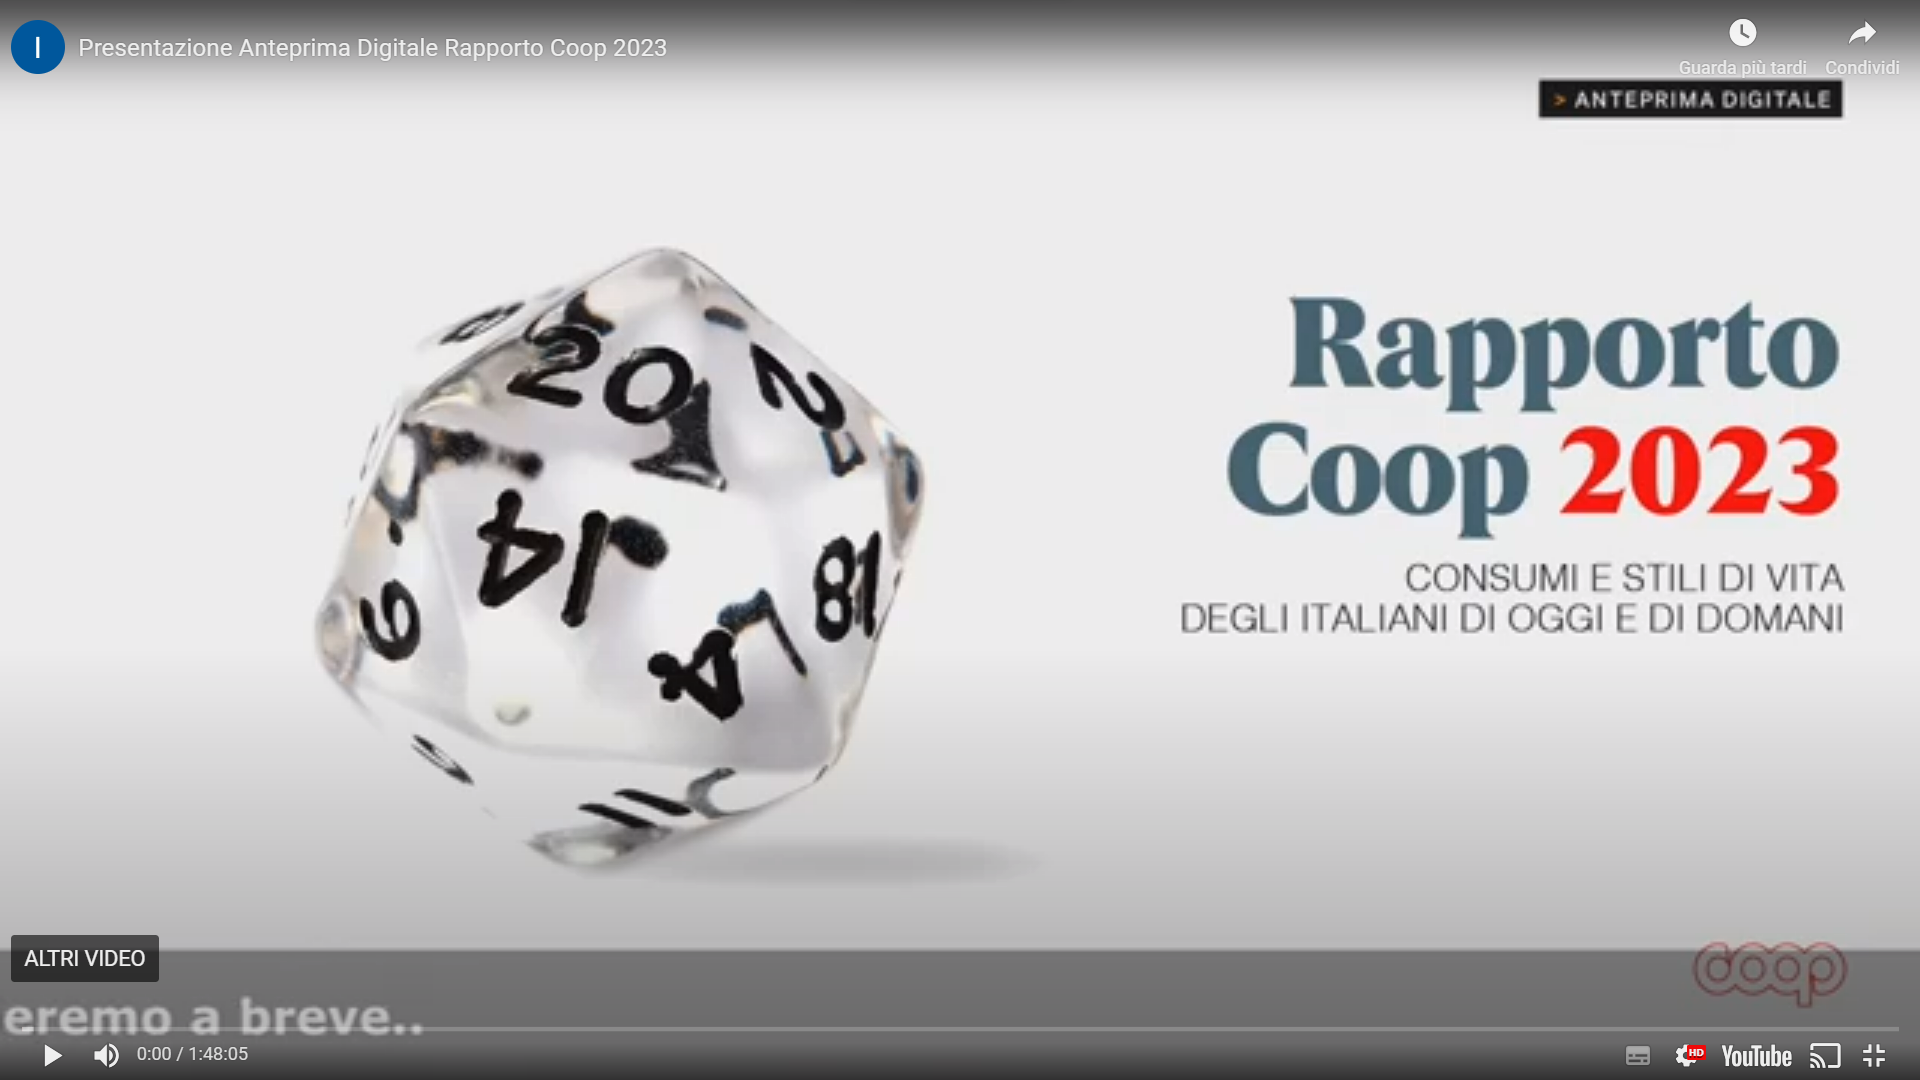 VIDEO – Guarda la Presentazione Anteprima Digitale Rapporto Coop 23